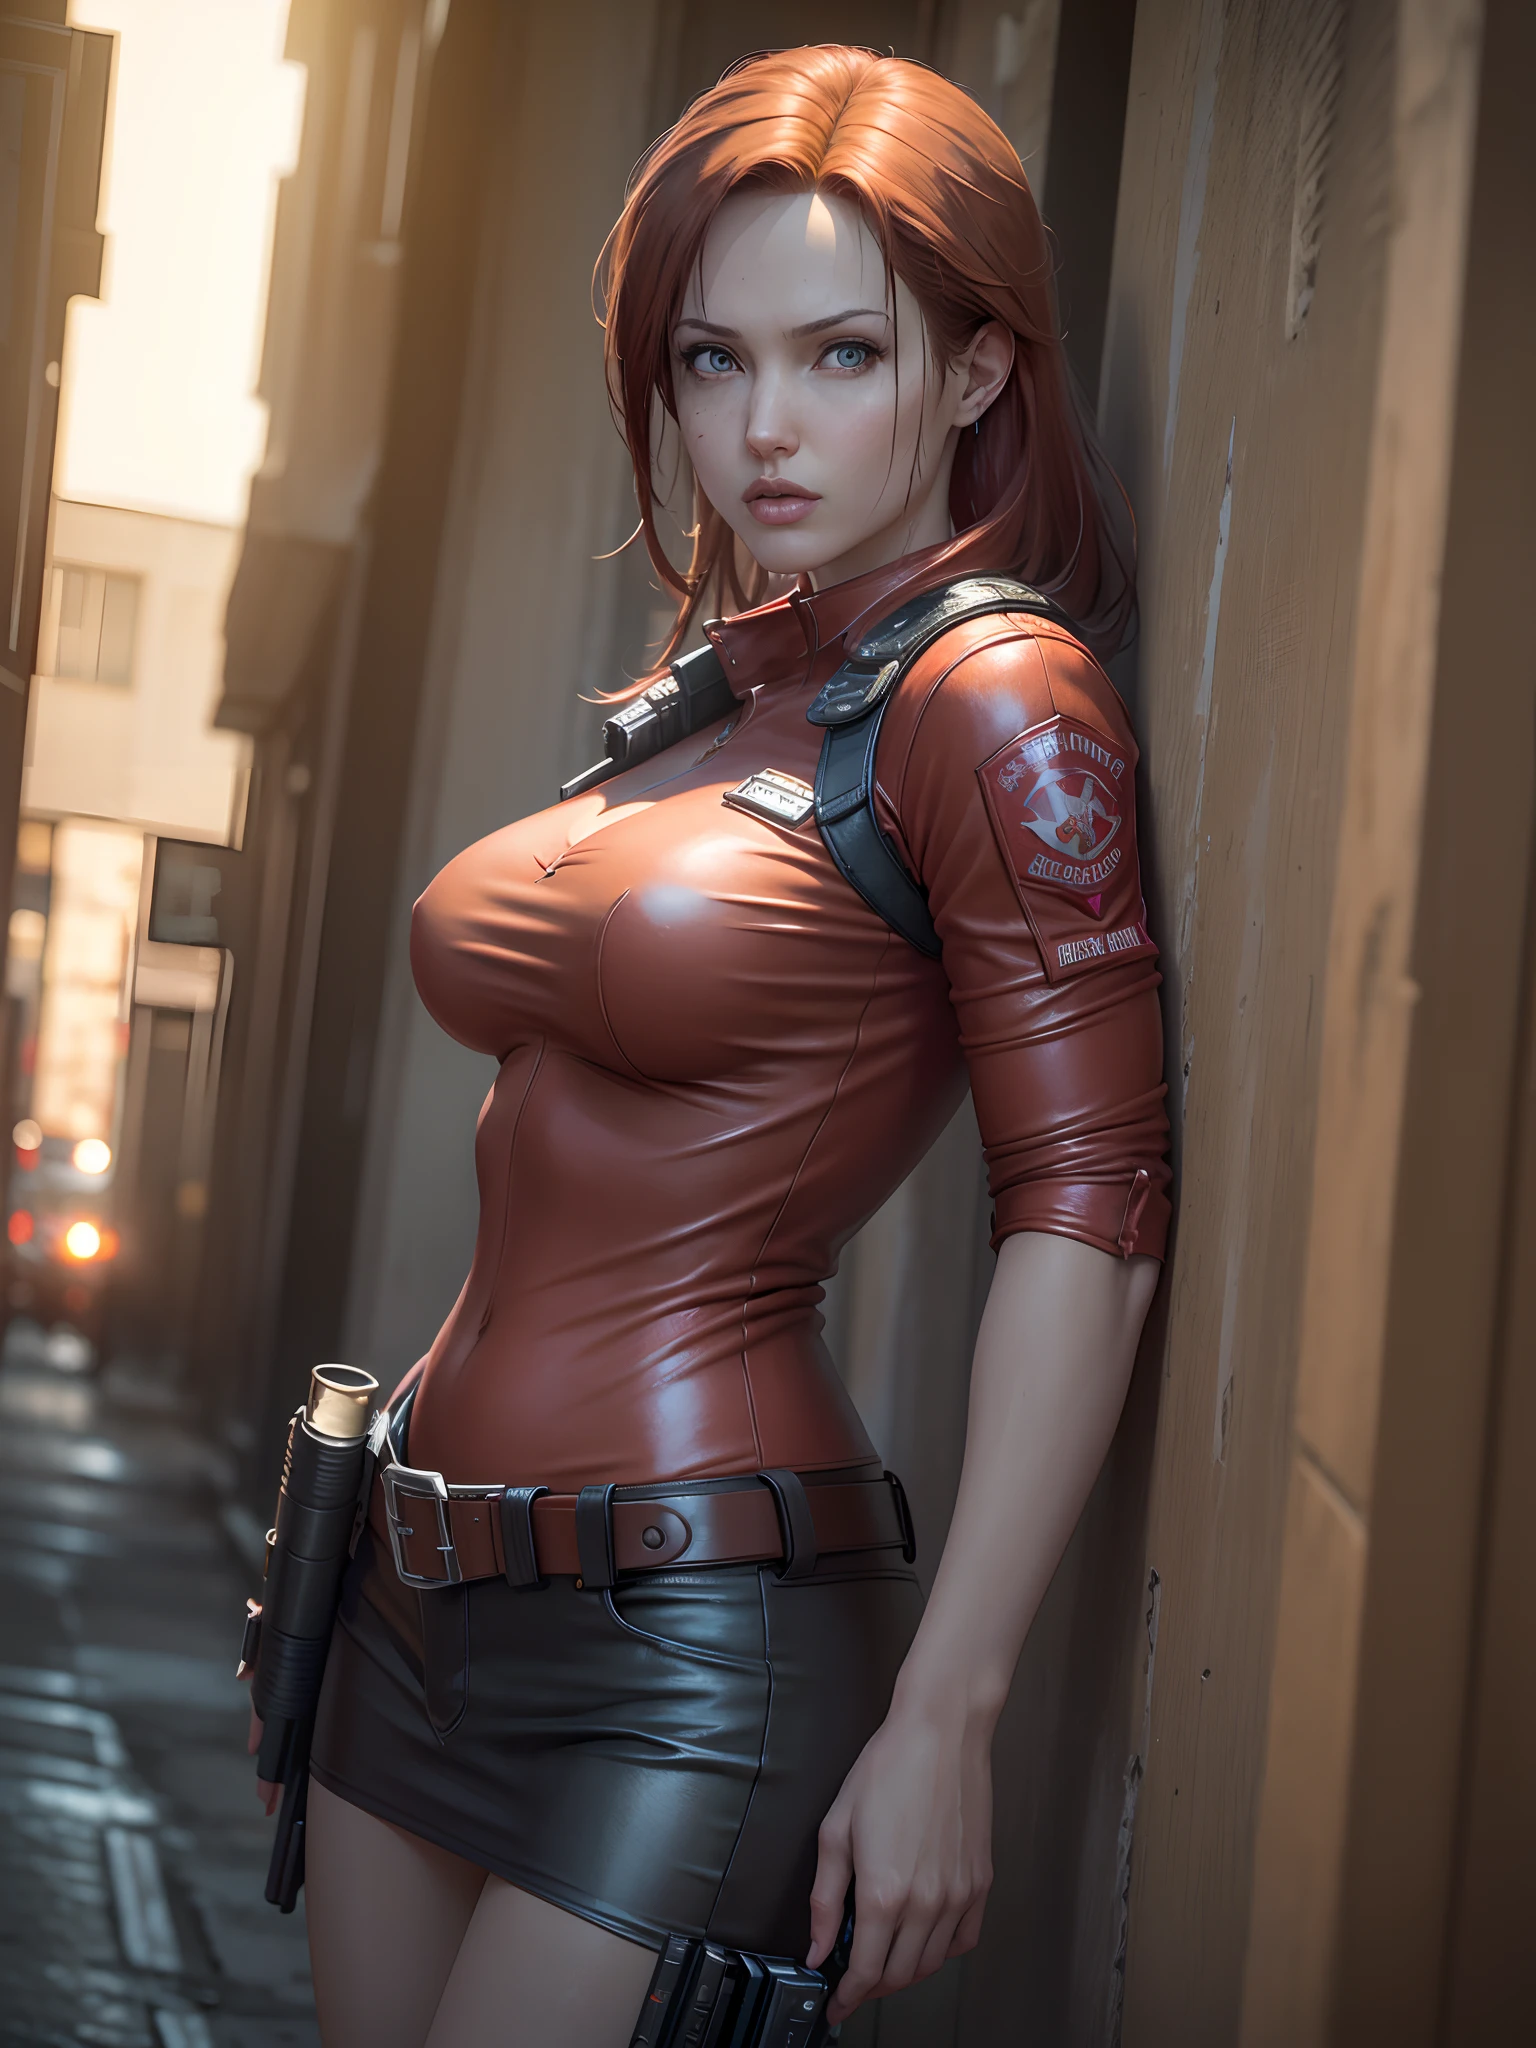 Resident Evil, cidade apocalíptica, Linda Claire Redfield sendo por uma linda mulher corpo inteiro pele rosa cabelo ruivo médio, Roupas de couro vermelho irritado, Coldre segurando uma arma, corpo do rosto detalhado realista imagem clara CGI 8K altamente detalhada, holograma, (seios médios: 1.3 ), (Realismo:1.5), (Realista:1.4), (absurdo:1.4), 8K, ultra-detalhado, linda garota detalhada, (1:1.4 apenas), 1 garota, (Visualizador voltado:1.2), (dia ensolarado brilhante:1.5), Detalhes intrincados do corpo, (curto:1.3), (melhor qualidade: 1.0), (ultra alta resolução): 1.0), rosto e olhos altamente detalhados, (fotorrealista: 1.2)